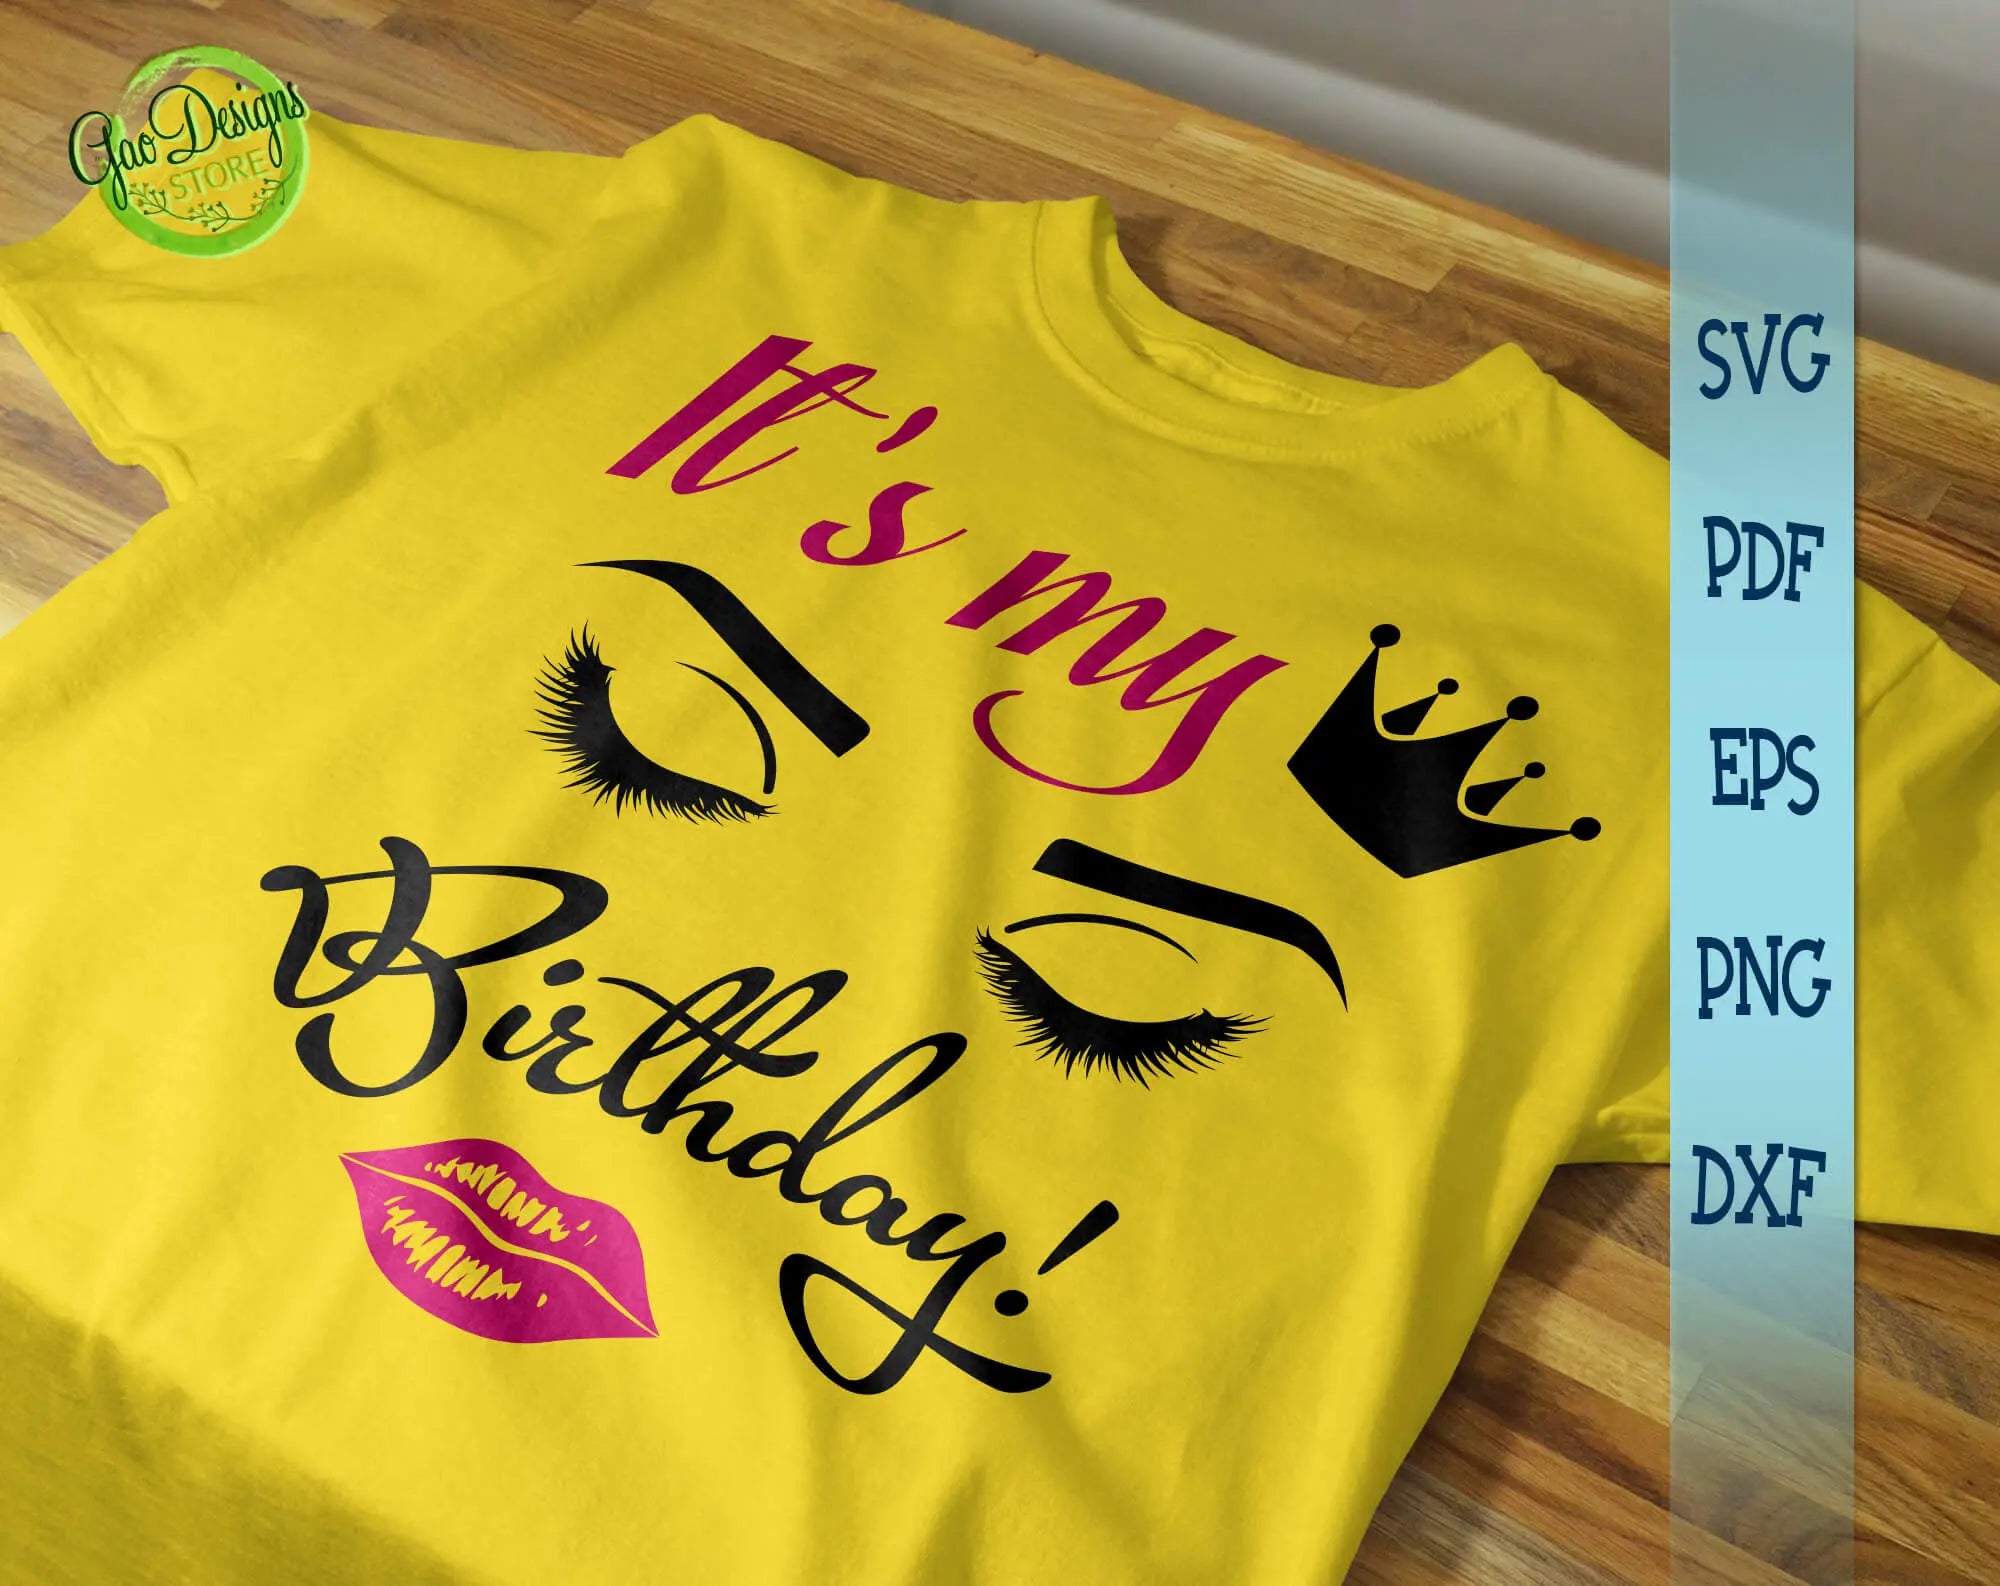 Its My Queens Birthday SVG Digital File, Birthday Svg